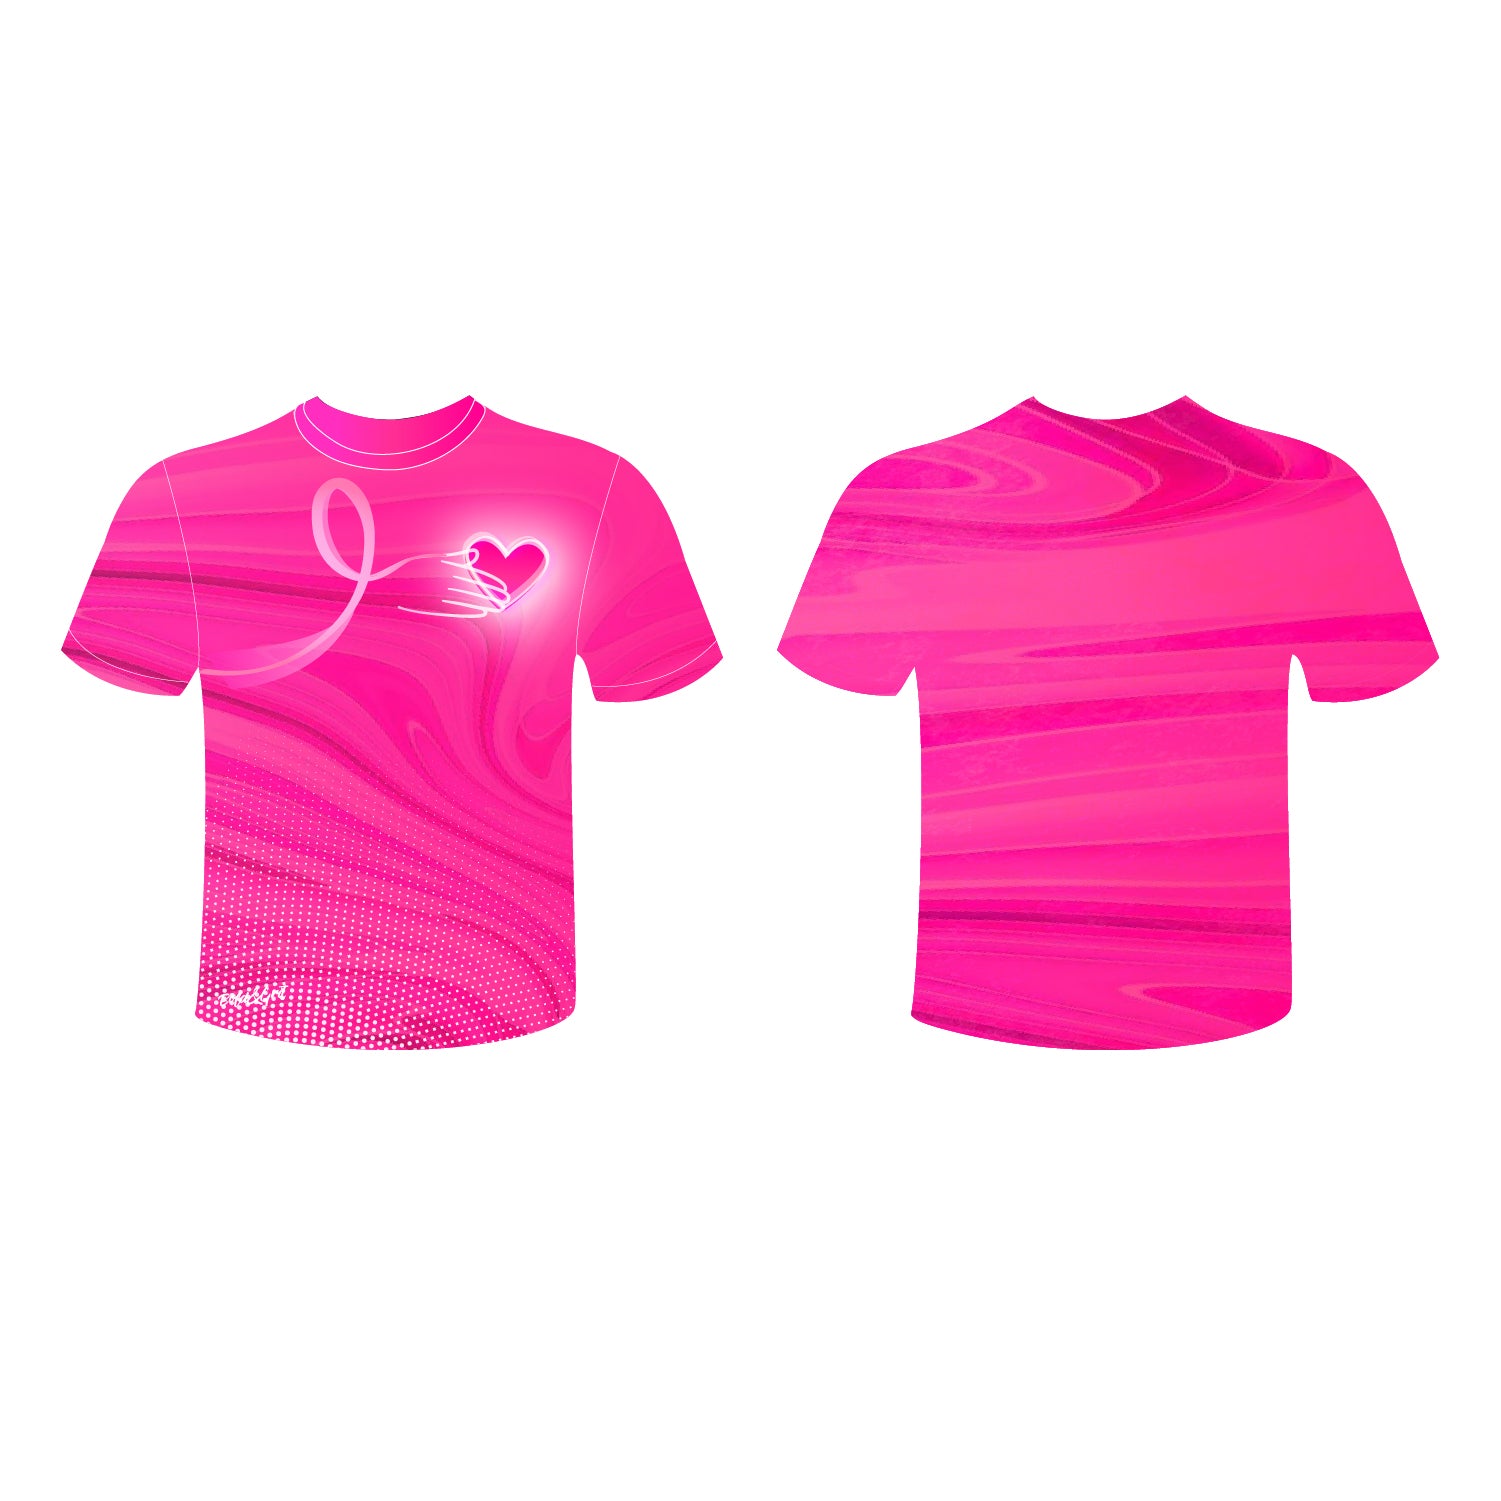 Pink Heart Awareness T-Shirt Unisex